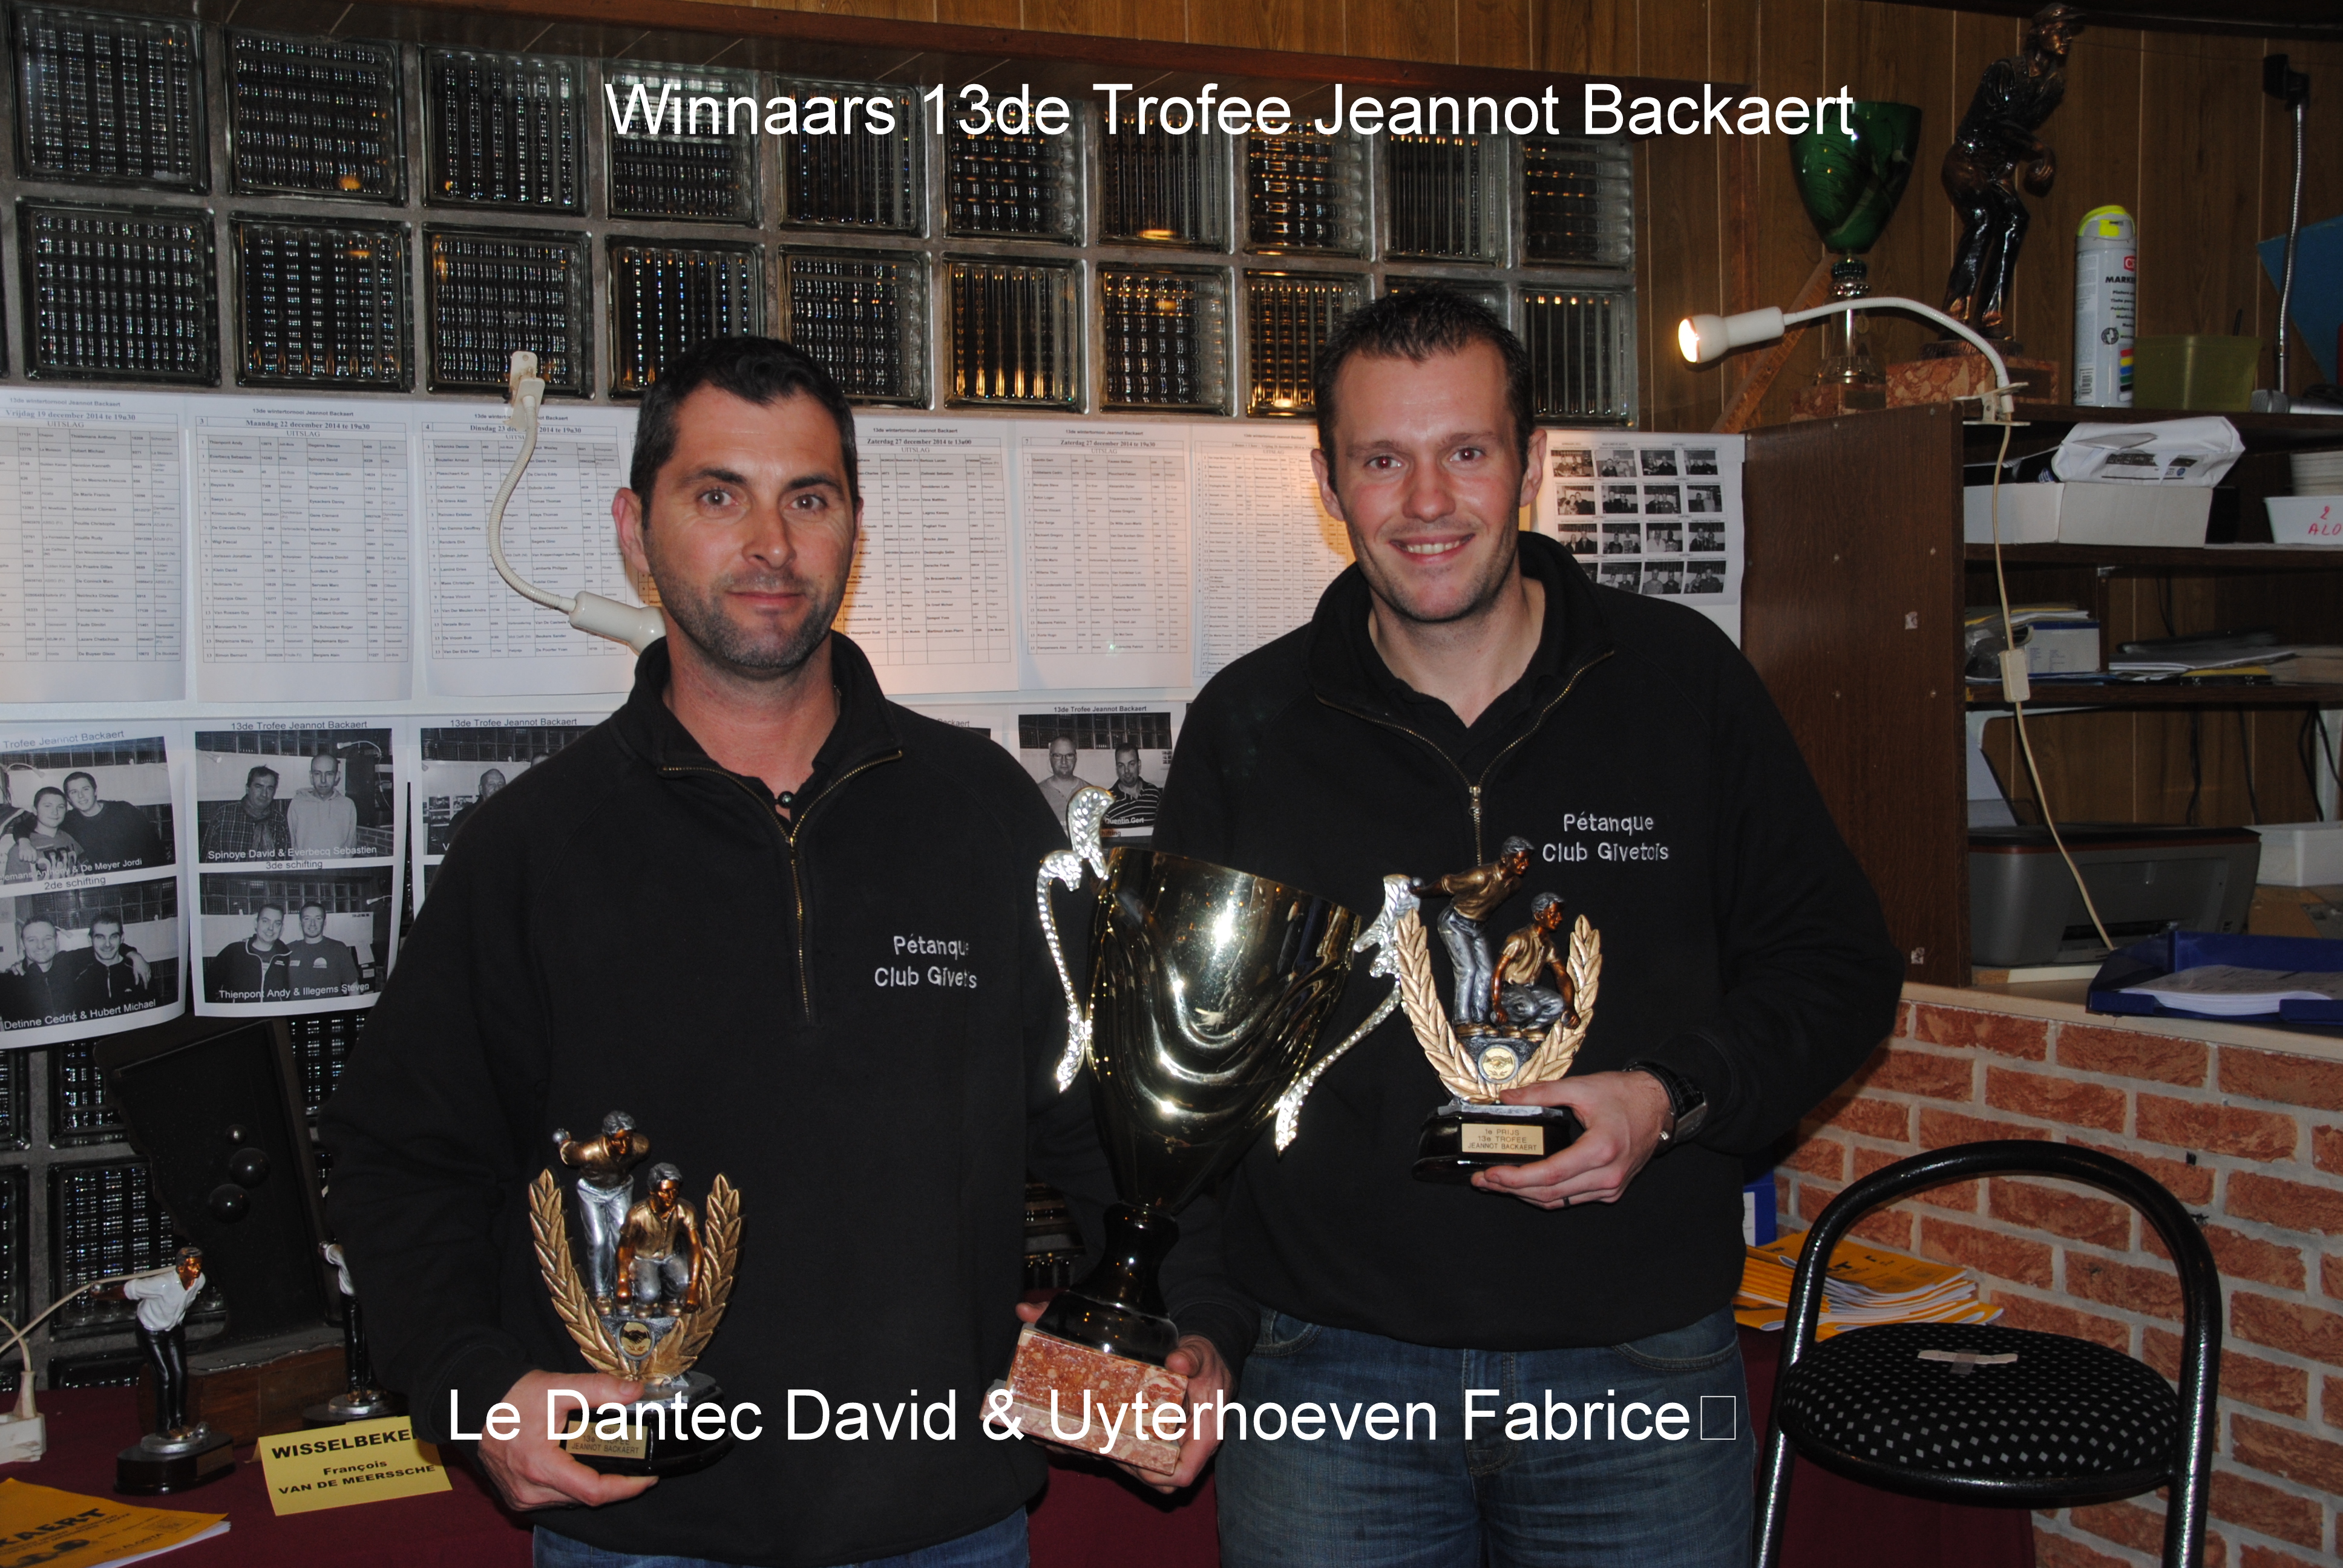 13de trofee Jeannot Backaert